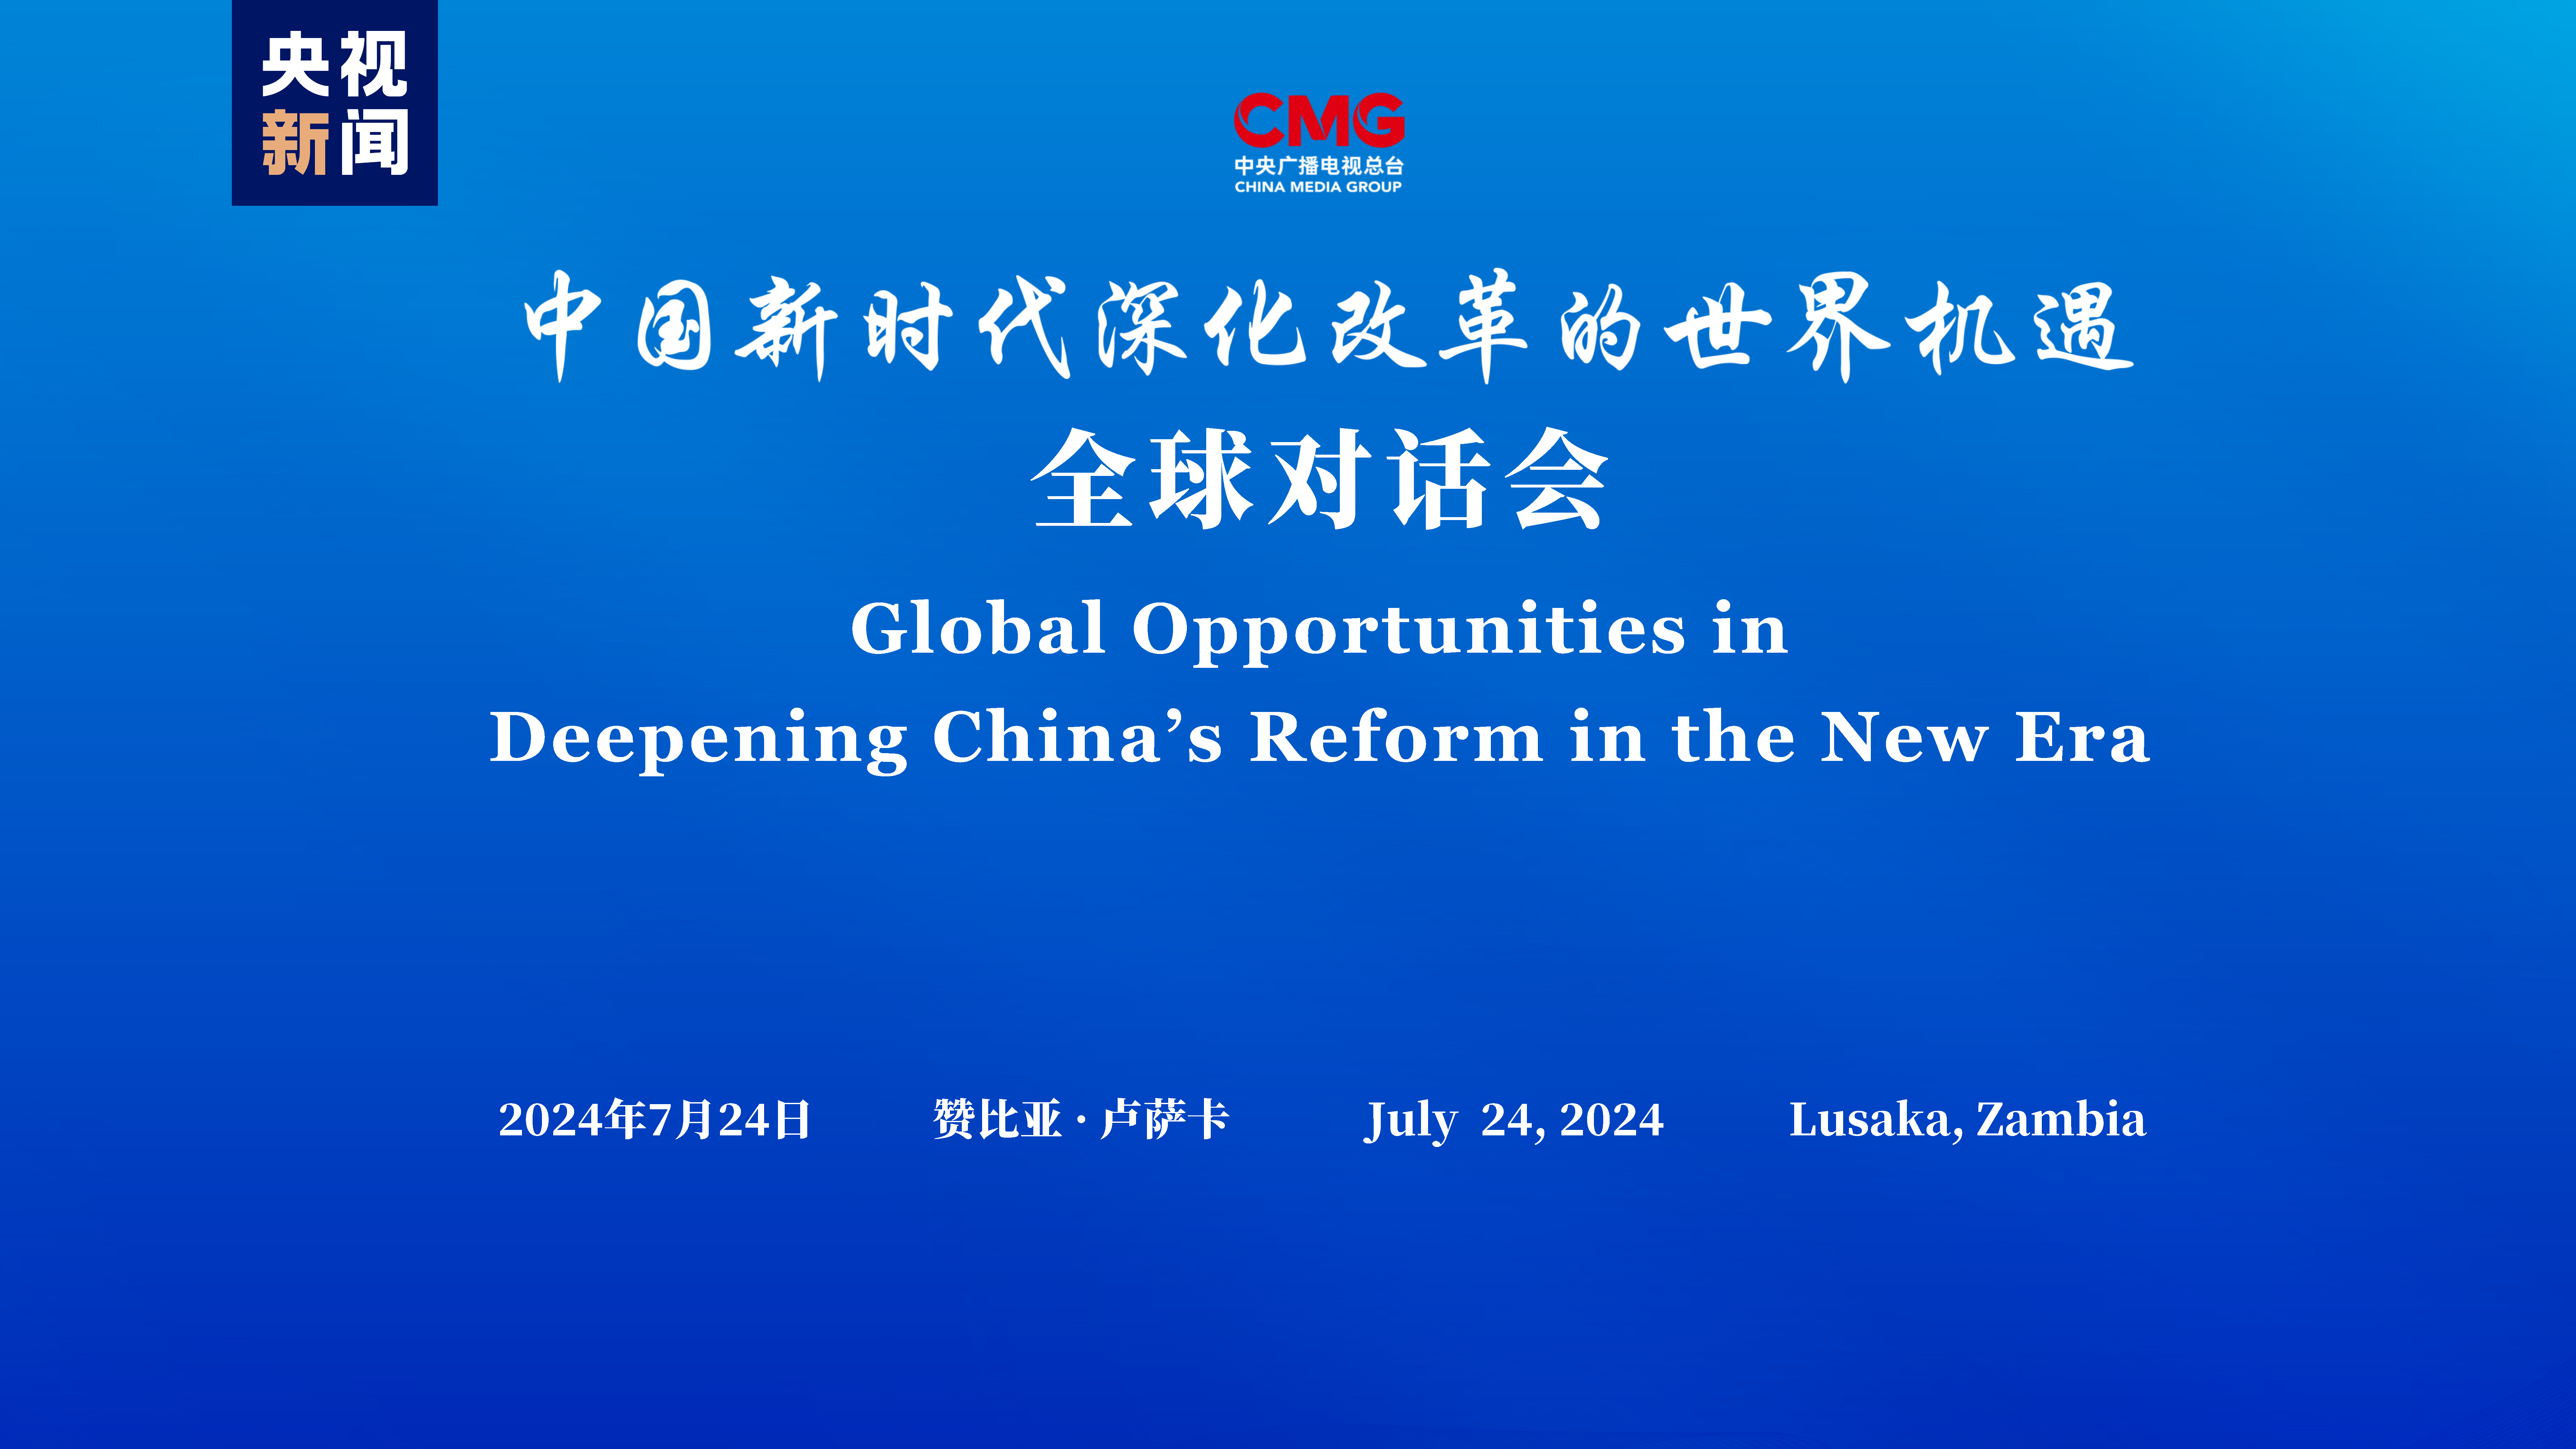 “नयाँ गुगमा चीनको सुधार तथा गहनतामा विश्वको अवसर” ग्लोबल वार्ता अन्तर्गत जाम्बिया विशेष बैठक